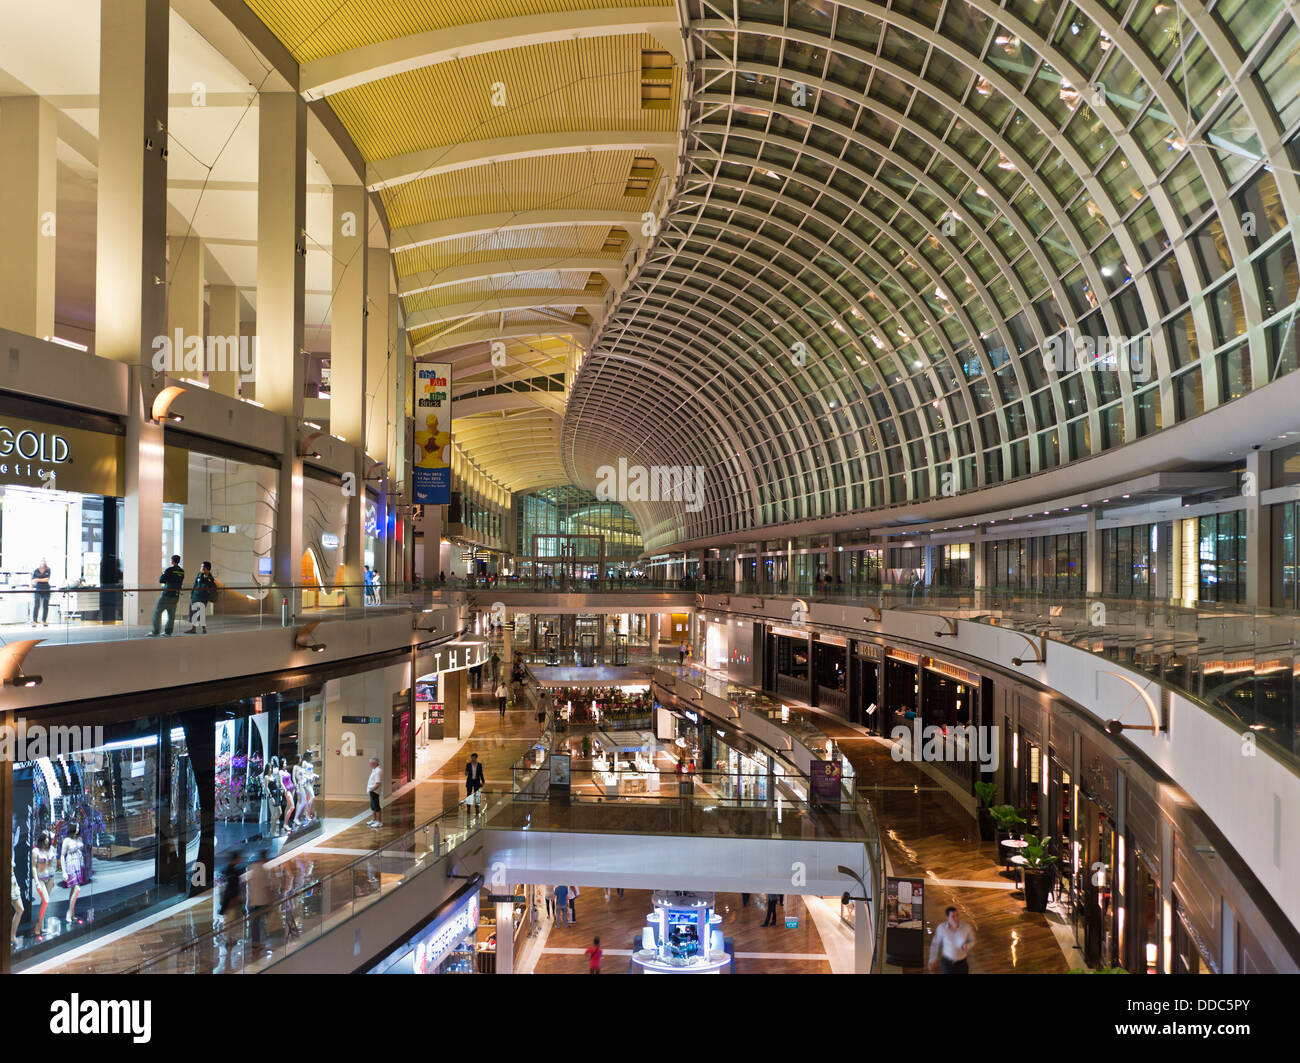 Dh Marina Bay Sands der Marina Bay in Singapur moderner Luxus Shopping mall Arcade Architektur Innenraum Stockfoto